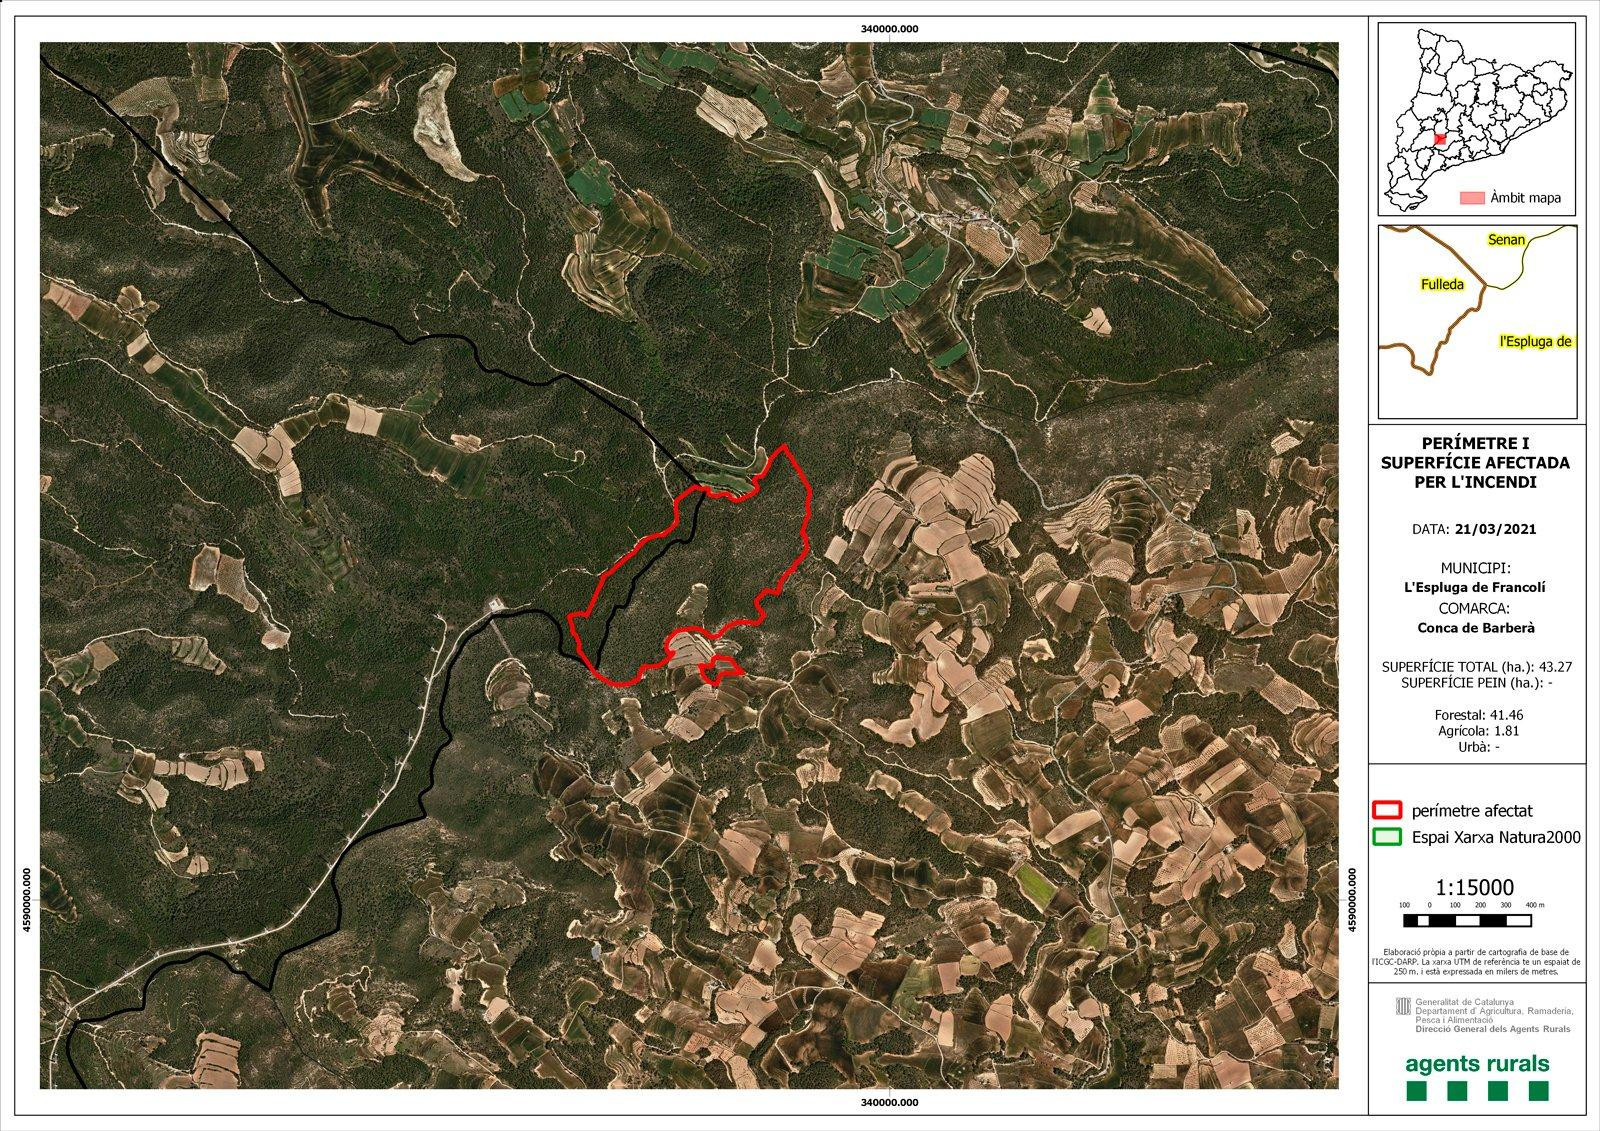 Imagen desde el satélite de la zona que abarcó el incendio en los municipios de Senan, L'Espluga de Francolí y Fulleda, en Tarragona / AGENTES RURALES